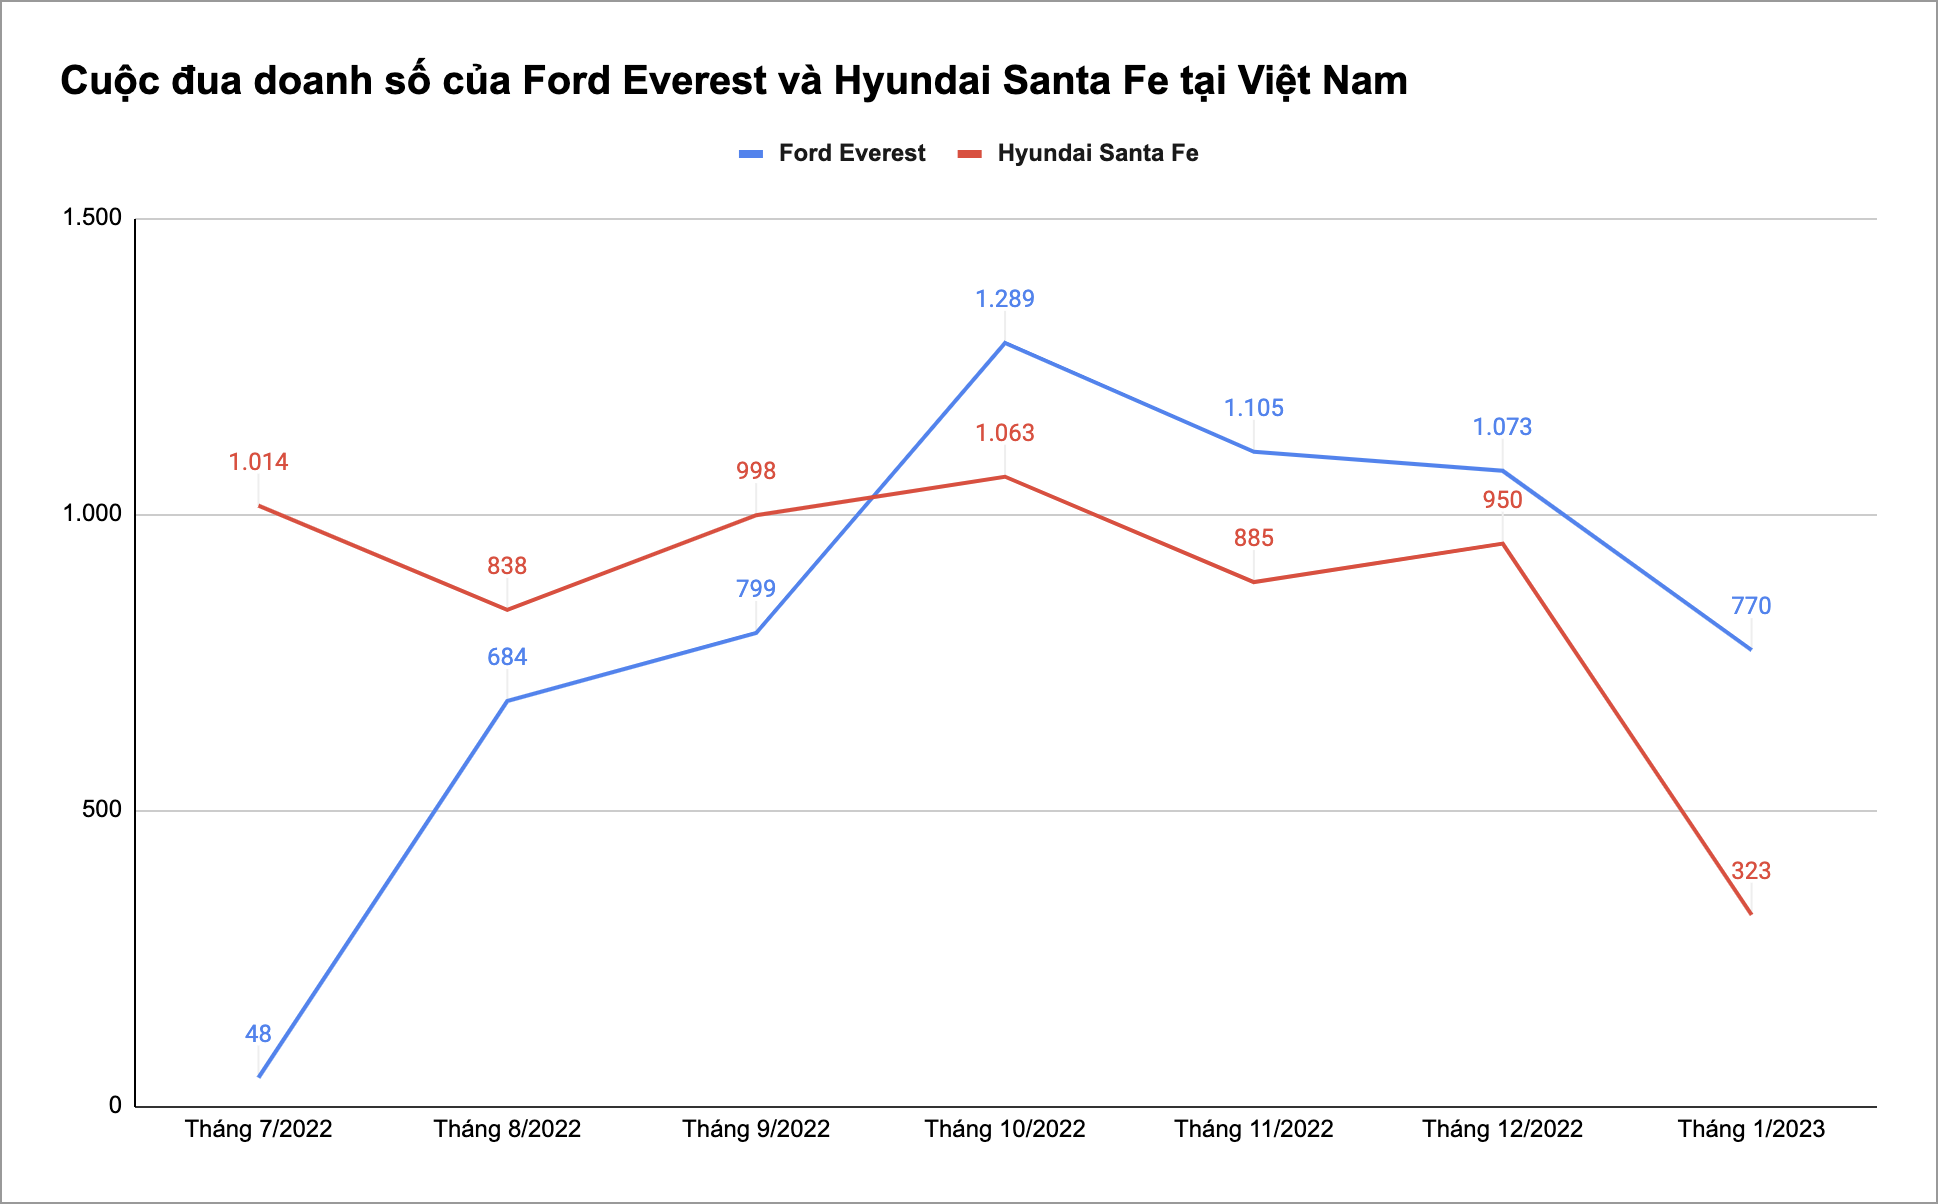 Ford Everest bán hơn gấp đôi Santa Fe, một mình gần bằng cả phân khúc SUV cỡ trung tại Việt Nam gộp lại  - Ảnh 1.